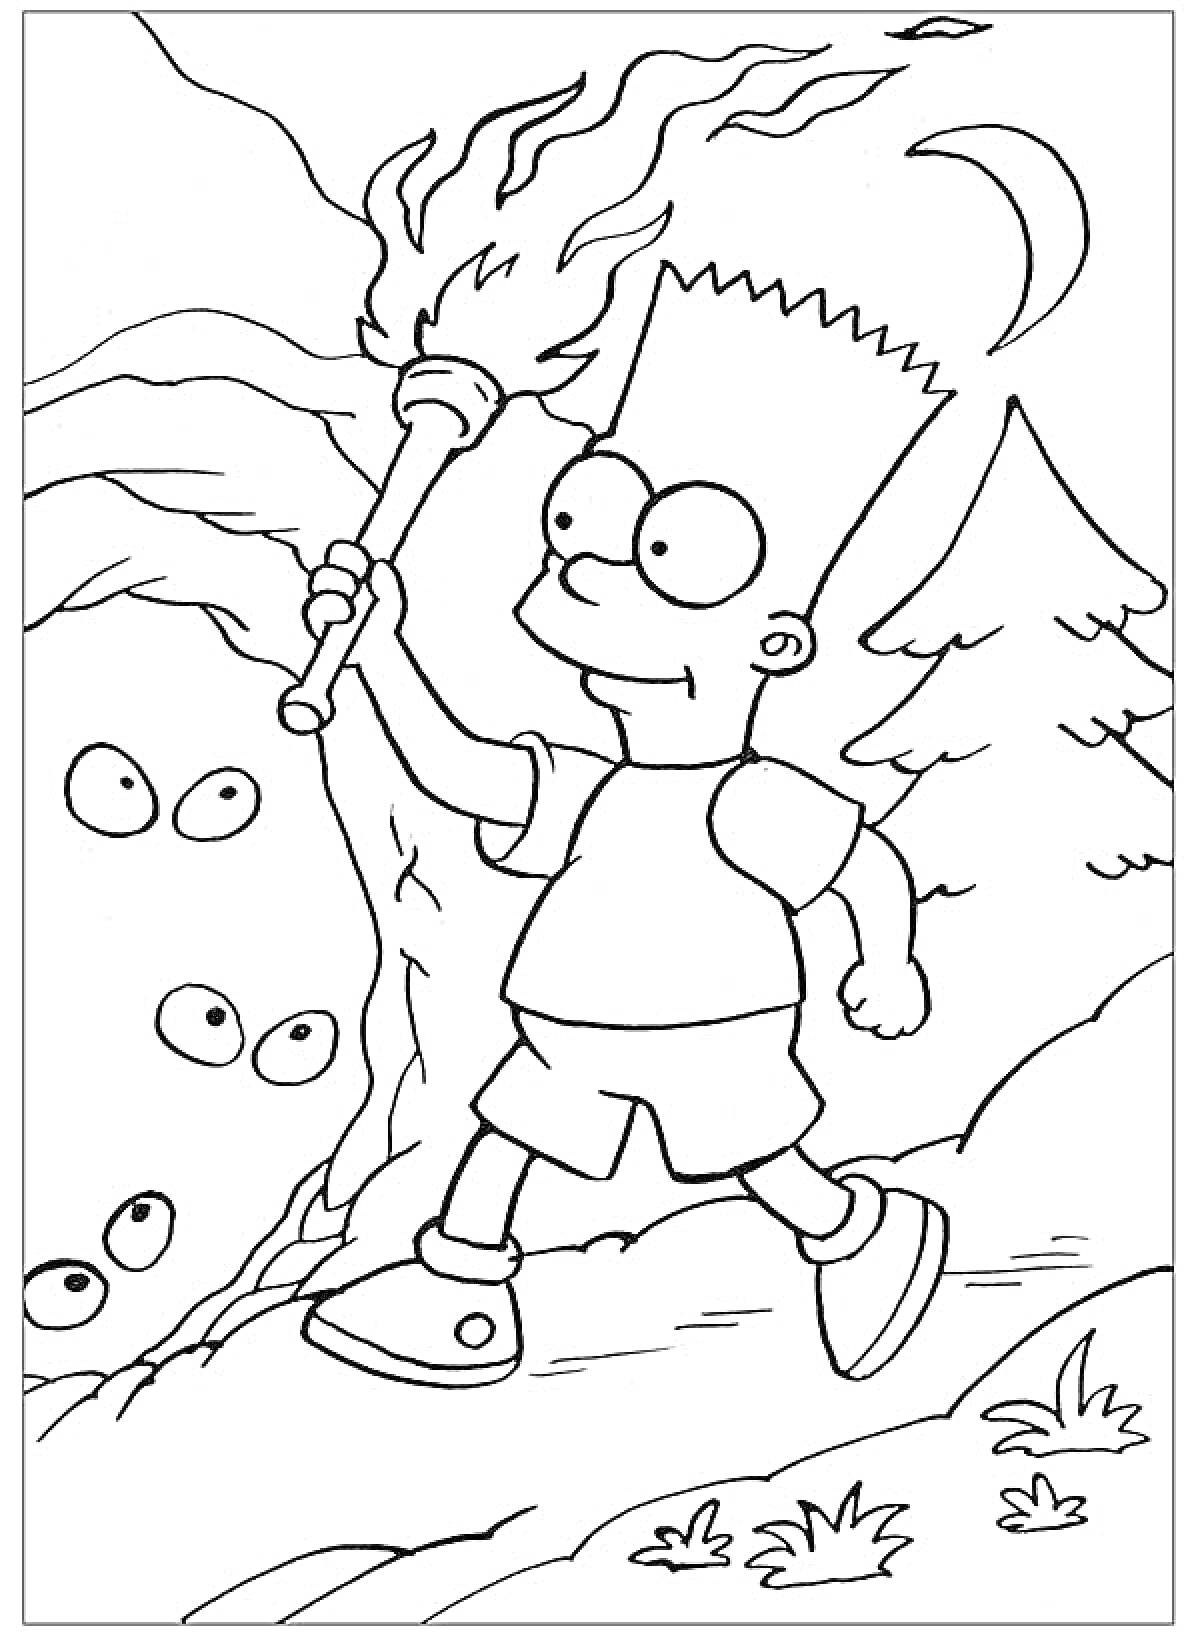 Барт Симпсон с факелом идет по лесу в ночное время